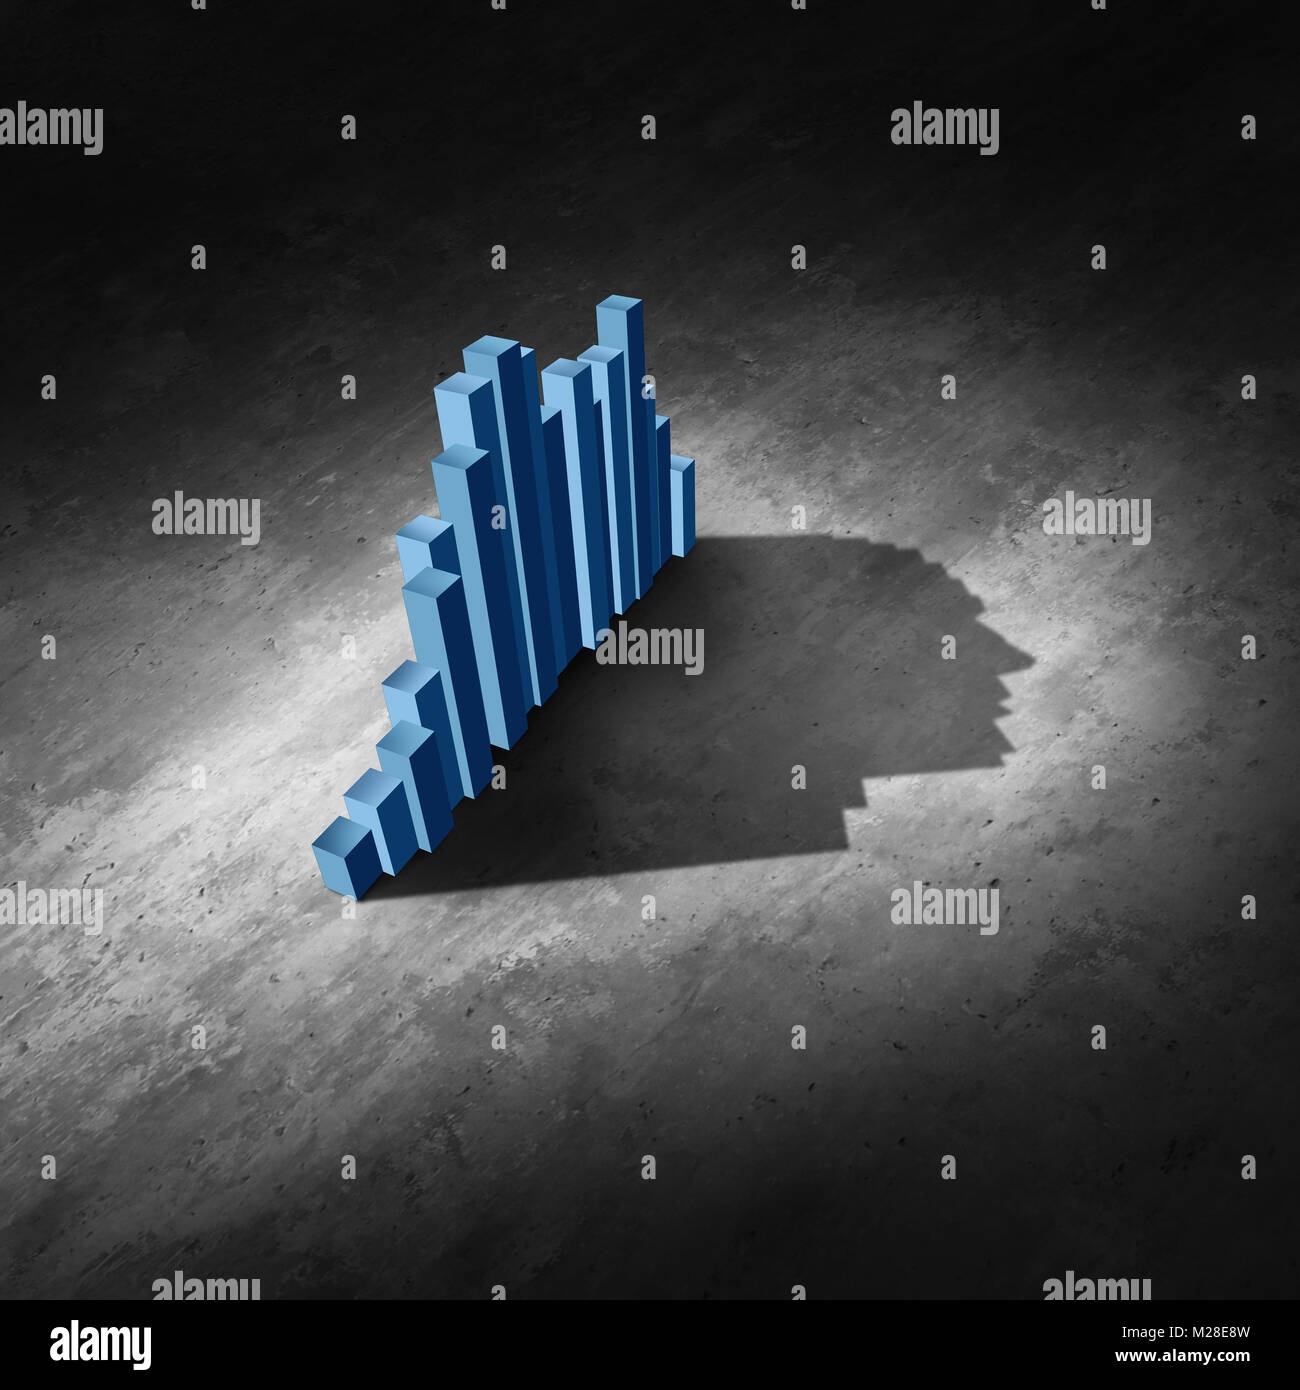 Análisis de datos empresariales como un resumen financiero y finanzas diagrama gráfico una sombra con forma de cabeza humana como una ilustración 3D. Foto de stock